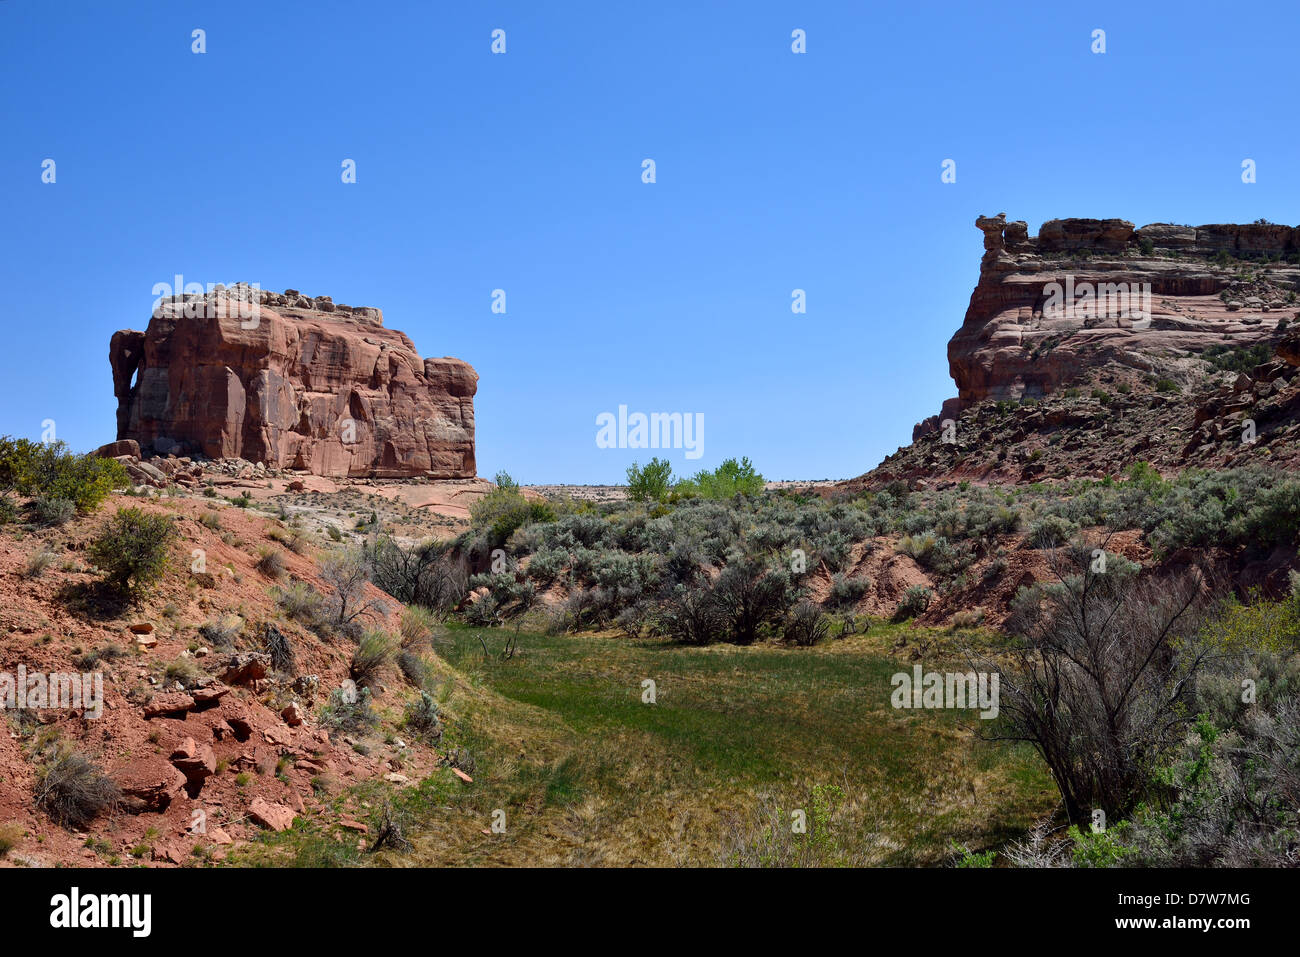 Acantilados de arenisca roja de la Meseta de Colorado. Moab, Utah, EE.UU.. Foto de stock